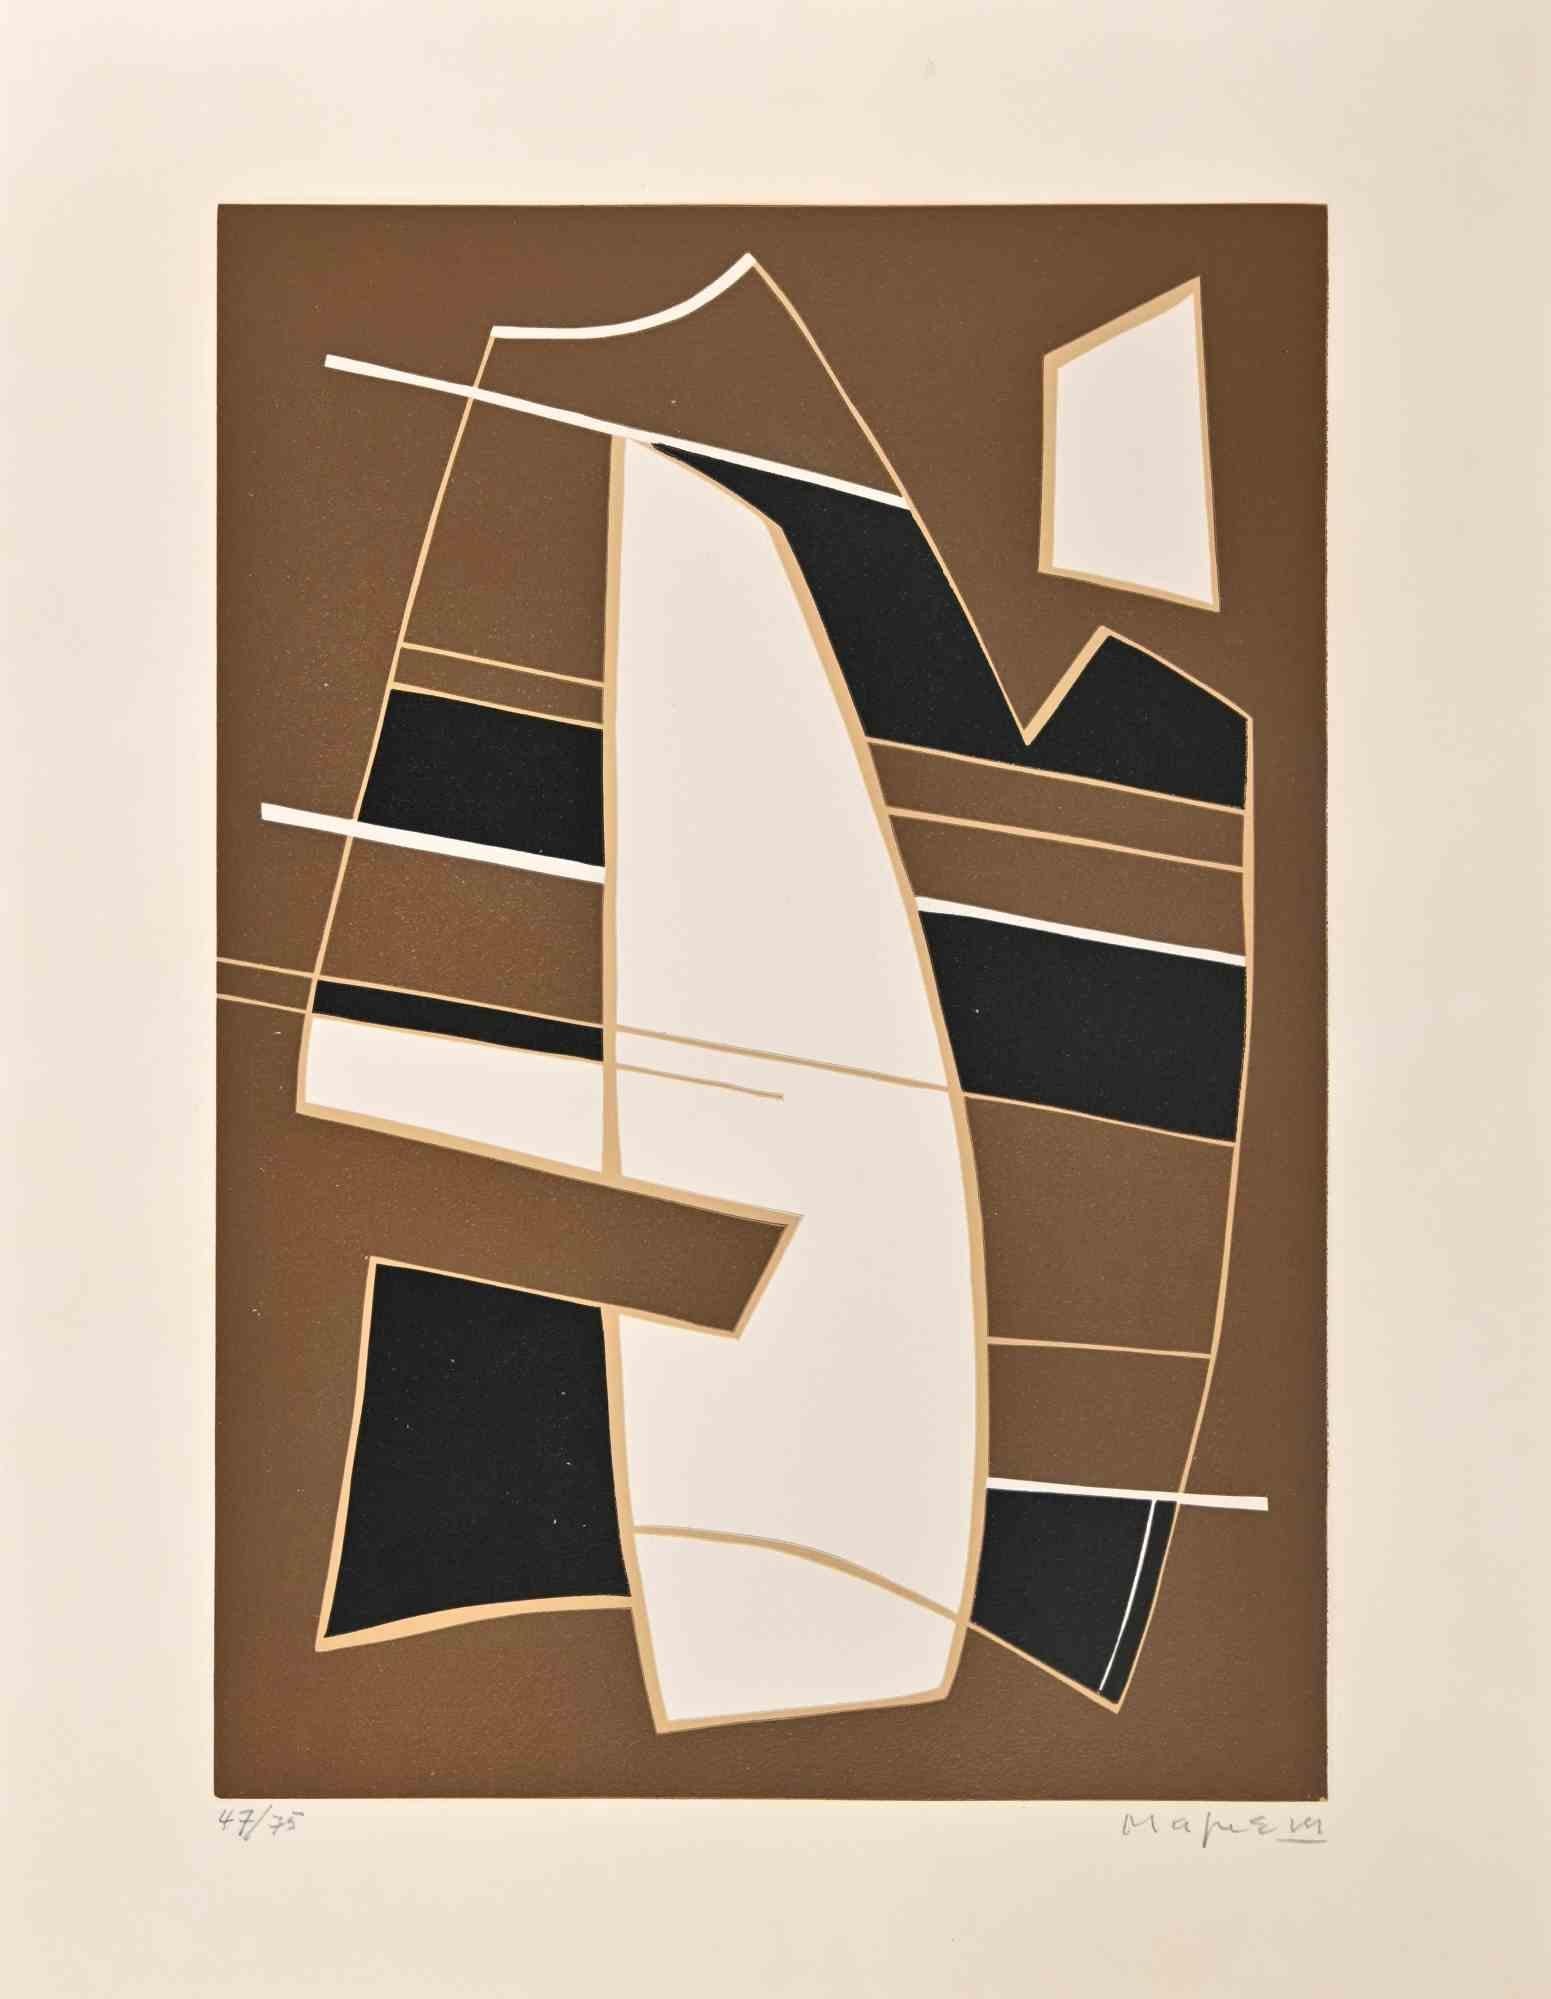 Abstrakte Komposition ist eine Radierung und Linoleum auf Arches-Papier, realisiert von Alberto Magnelli im Jahr 1970.

Handsigniert.

Nummeriert auf der Unterseite, Ausgabe 47/75. Gehört zur Reihe "La Magnanerie de la Ferrage", herausgegeben von